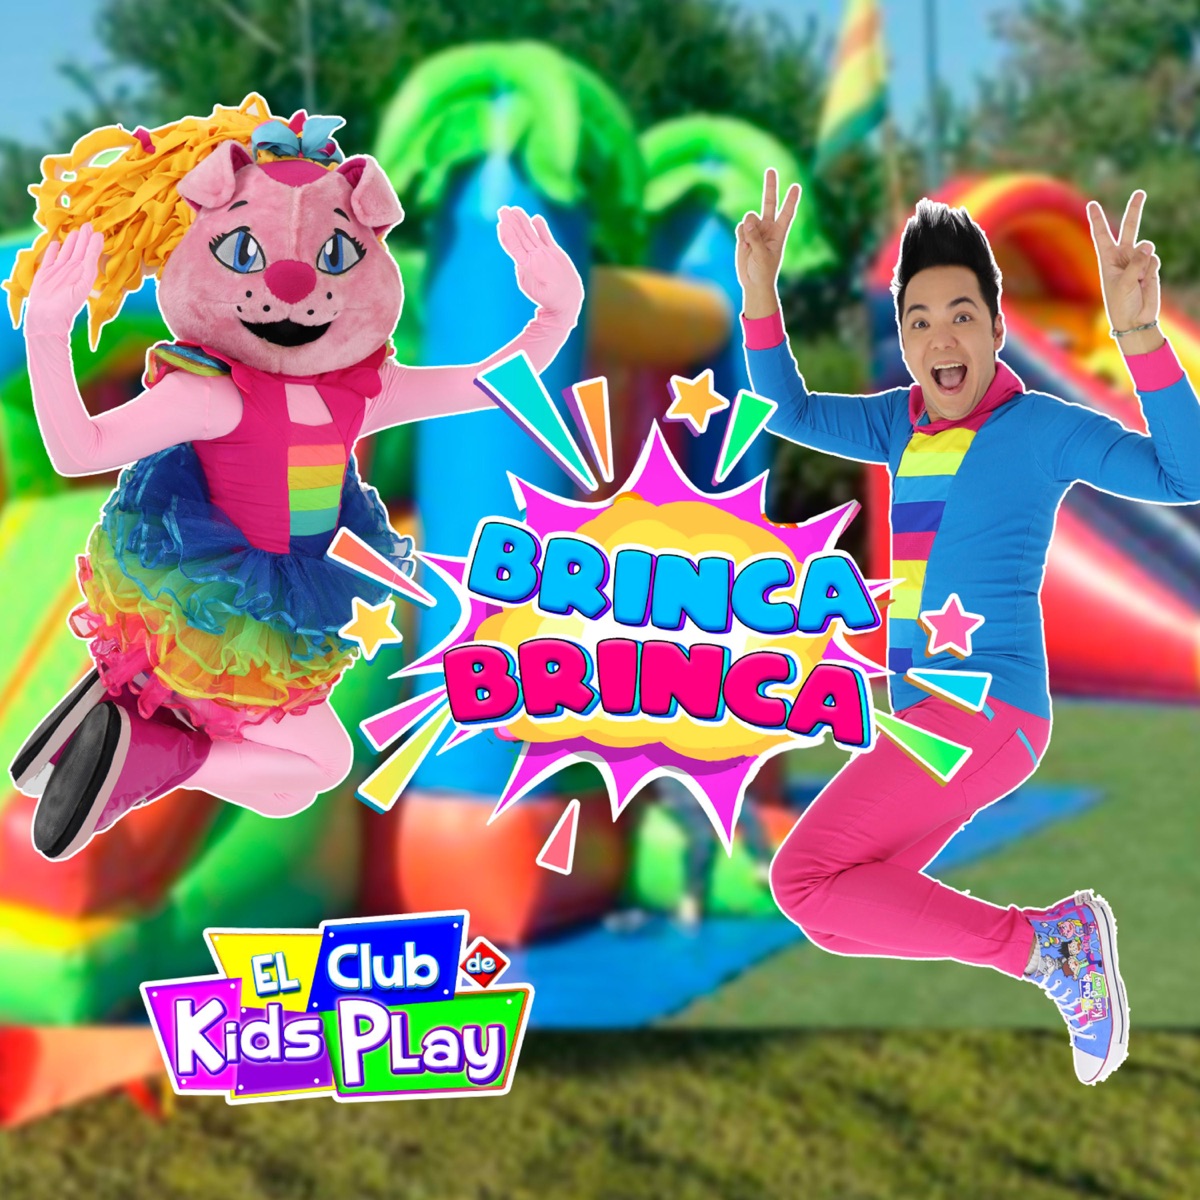 Somos el Club de Kids Play - Single de El Club de Kids Play en Apple Music